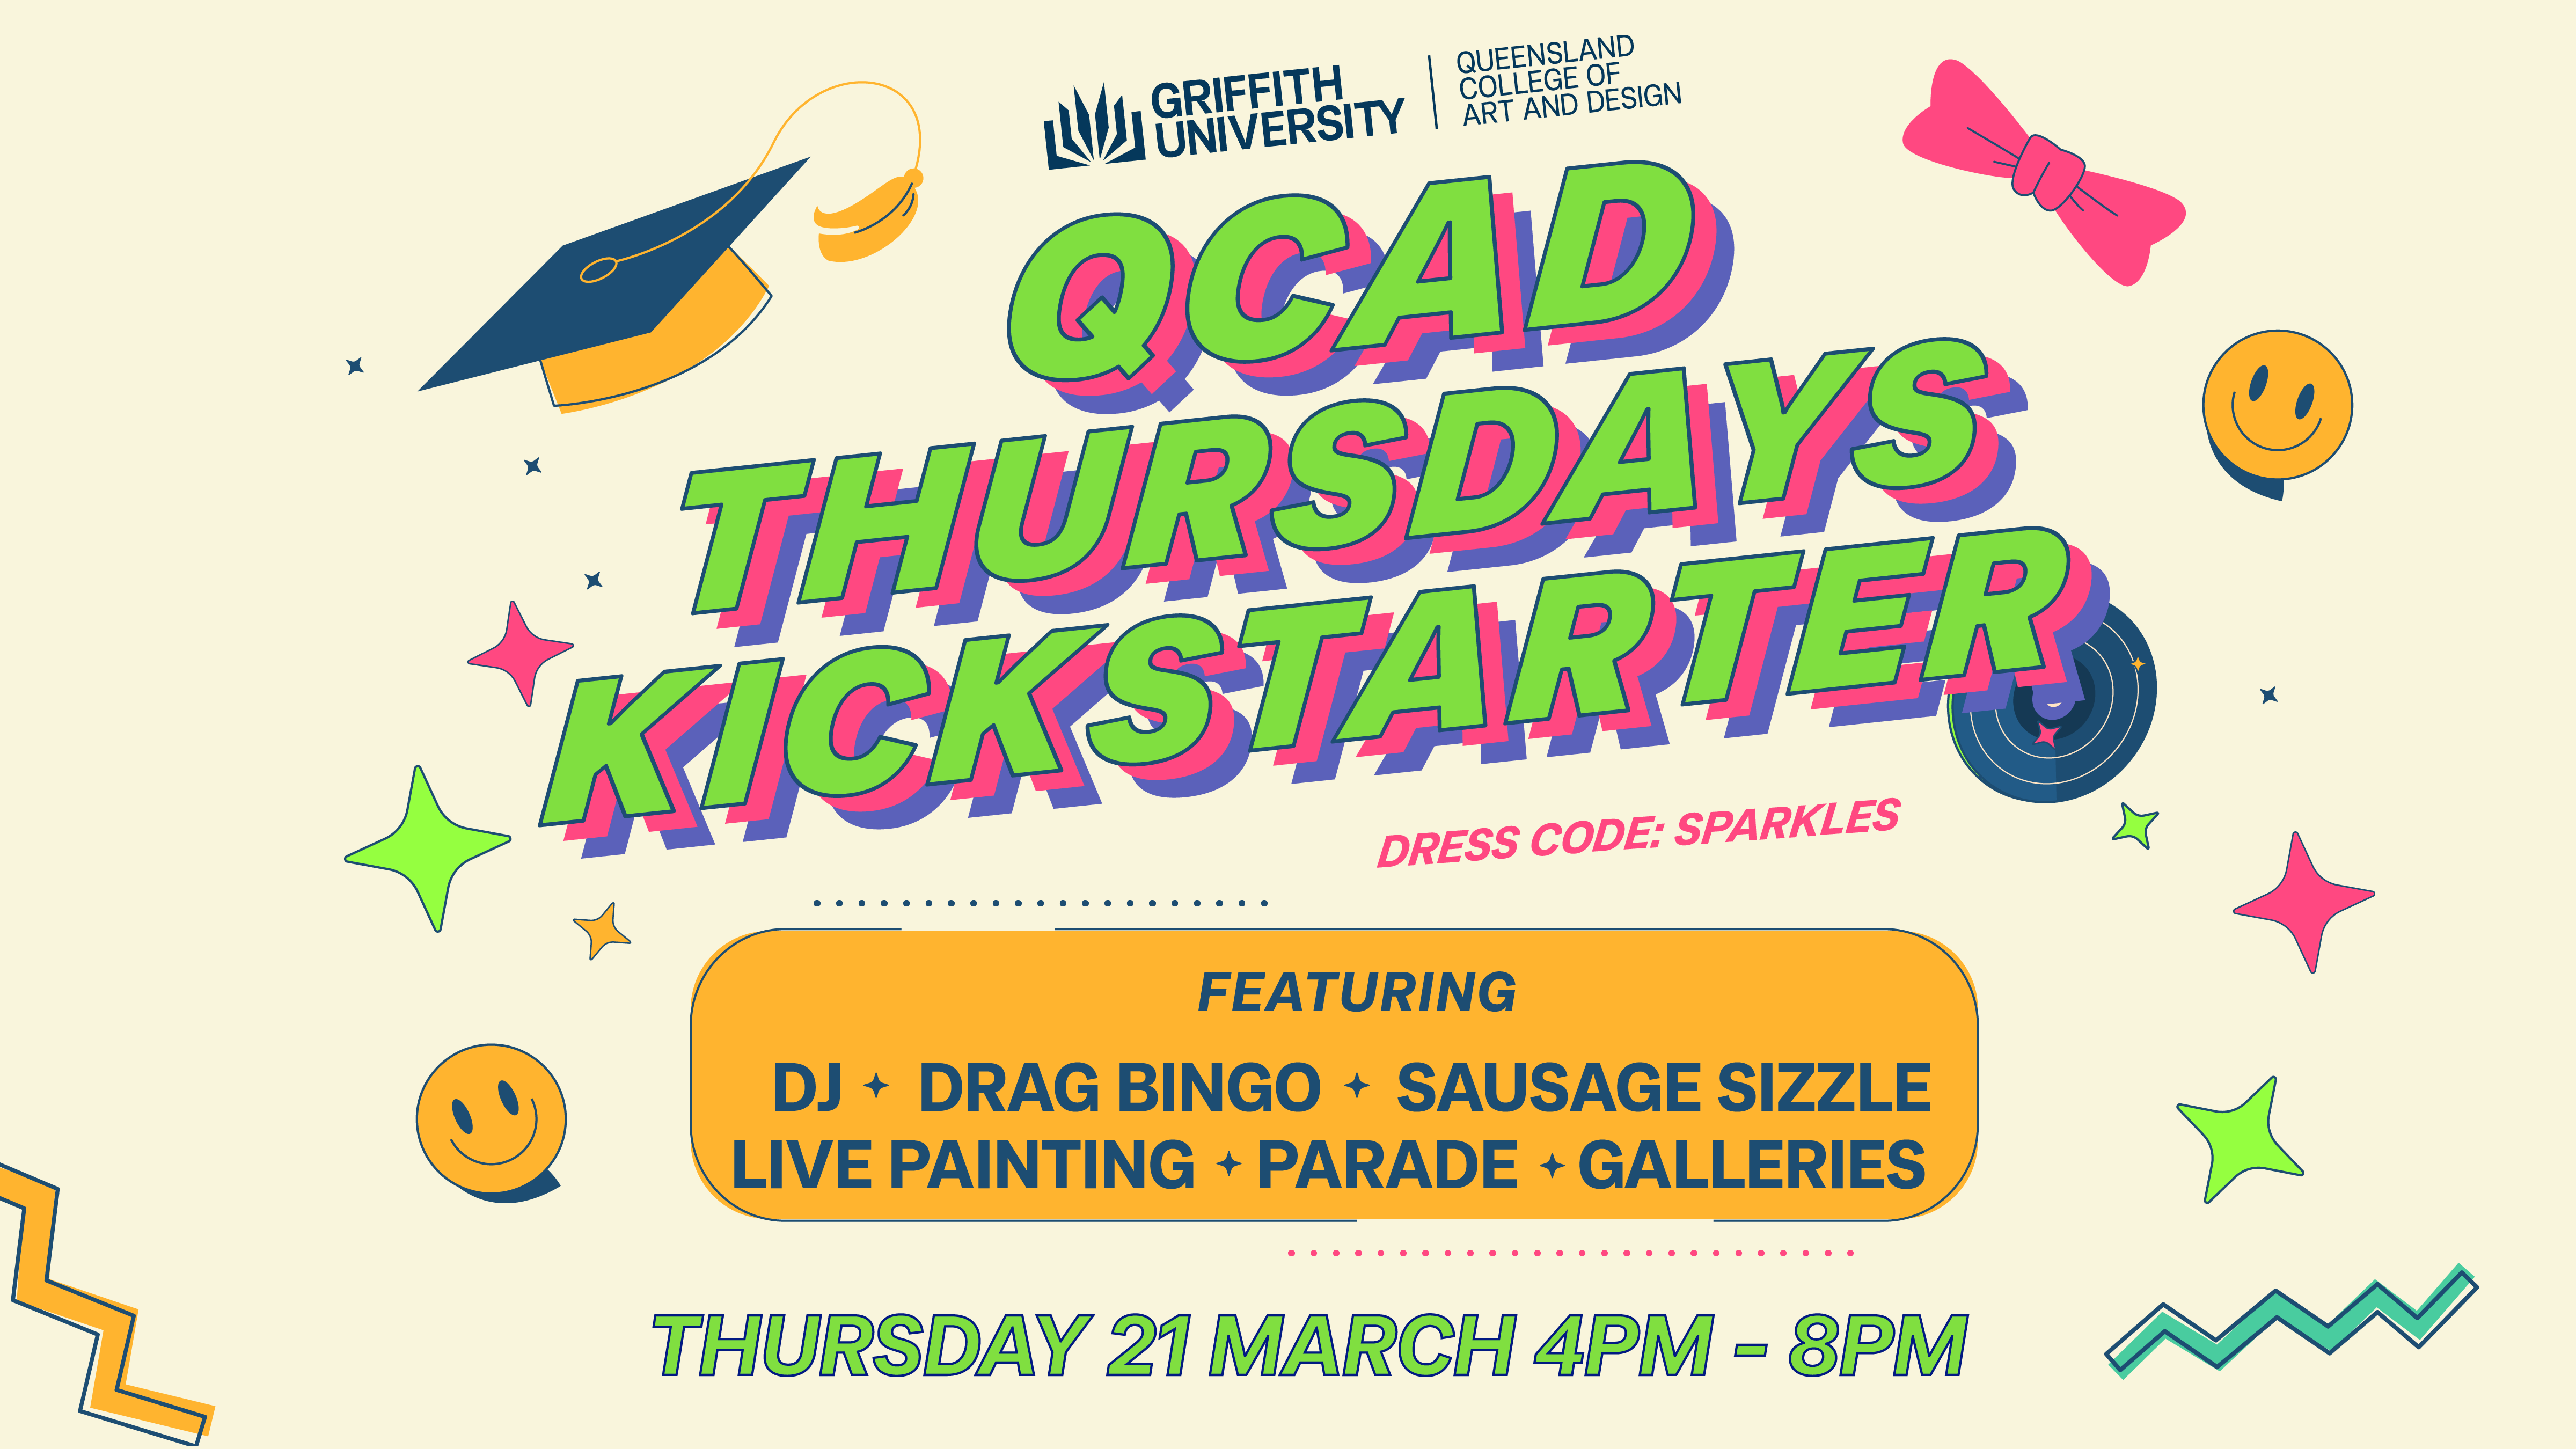 QCAD Thursday's Kickstart Event